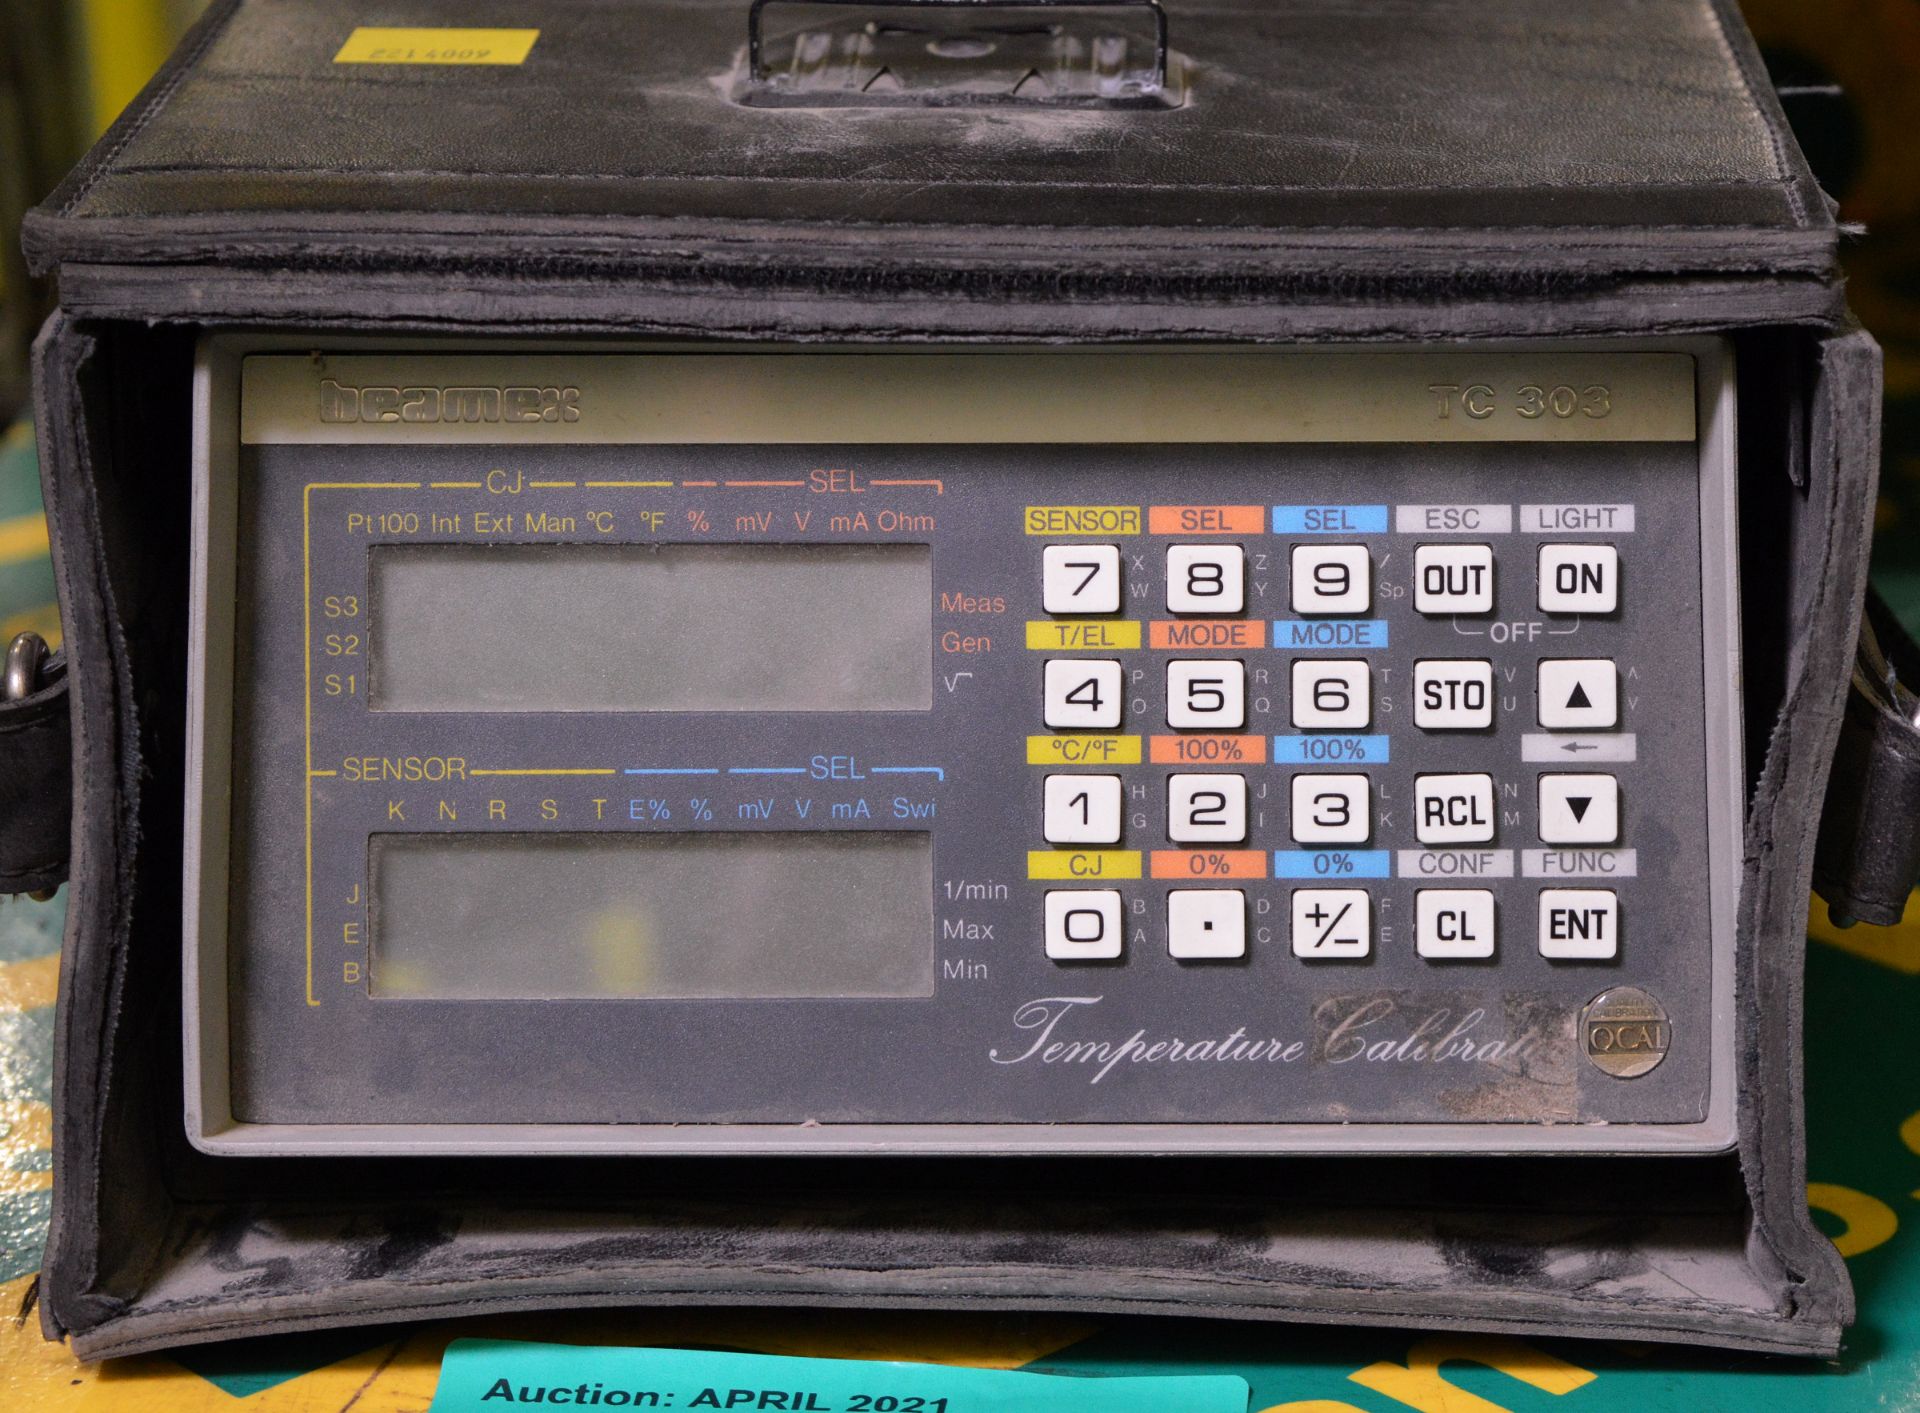 Beamex TC303 Temperature Calibrator Test Set - Image 2 of 2